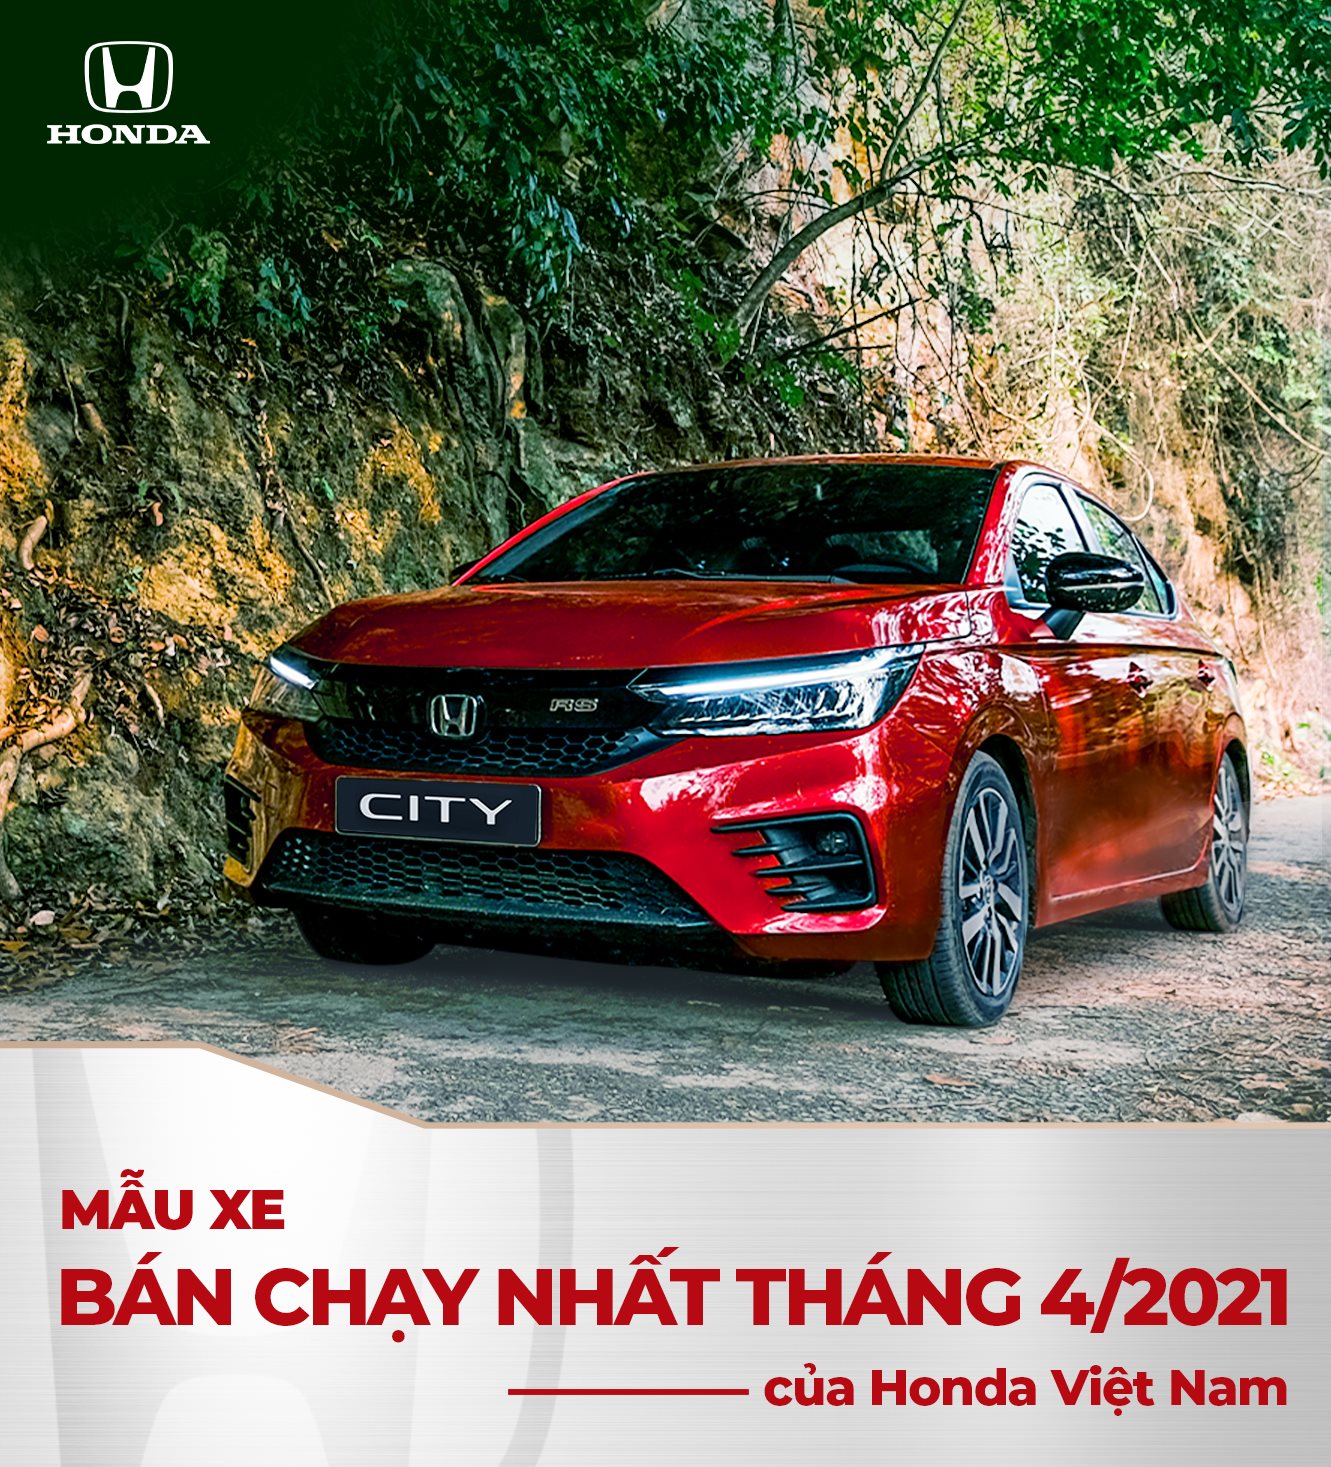 Honda City - Mẫu xe bán chạy nhất của Honda Việt Nam Tháng 4/2021